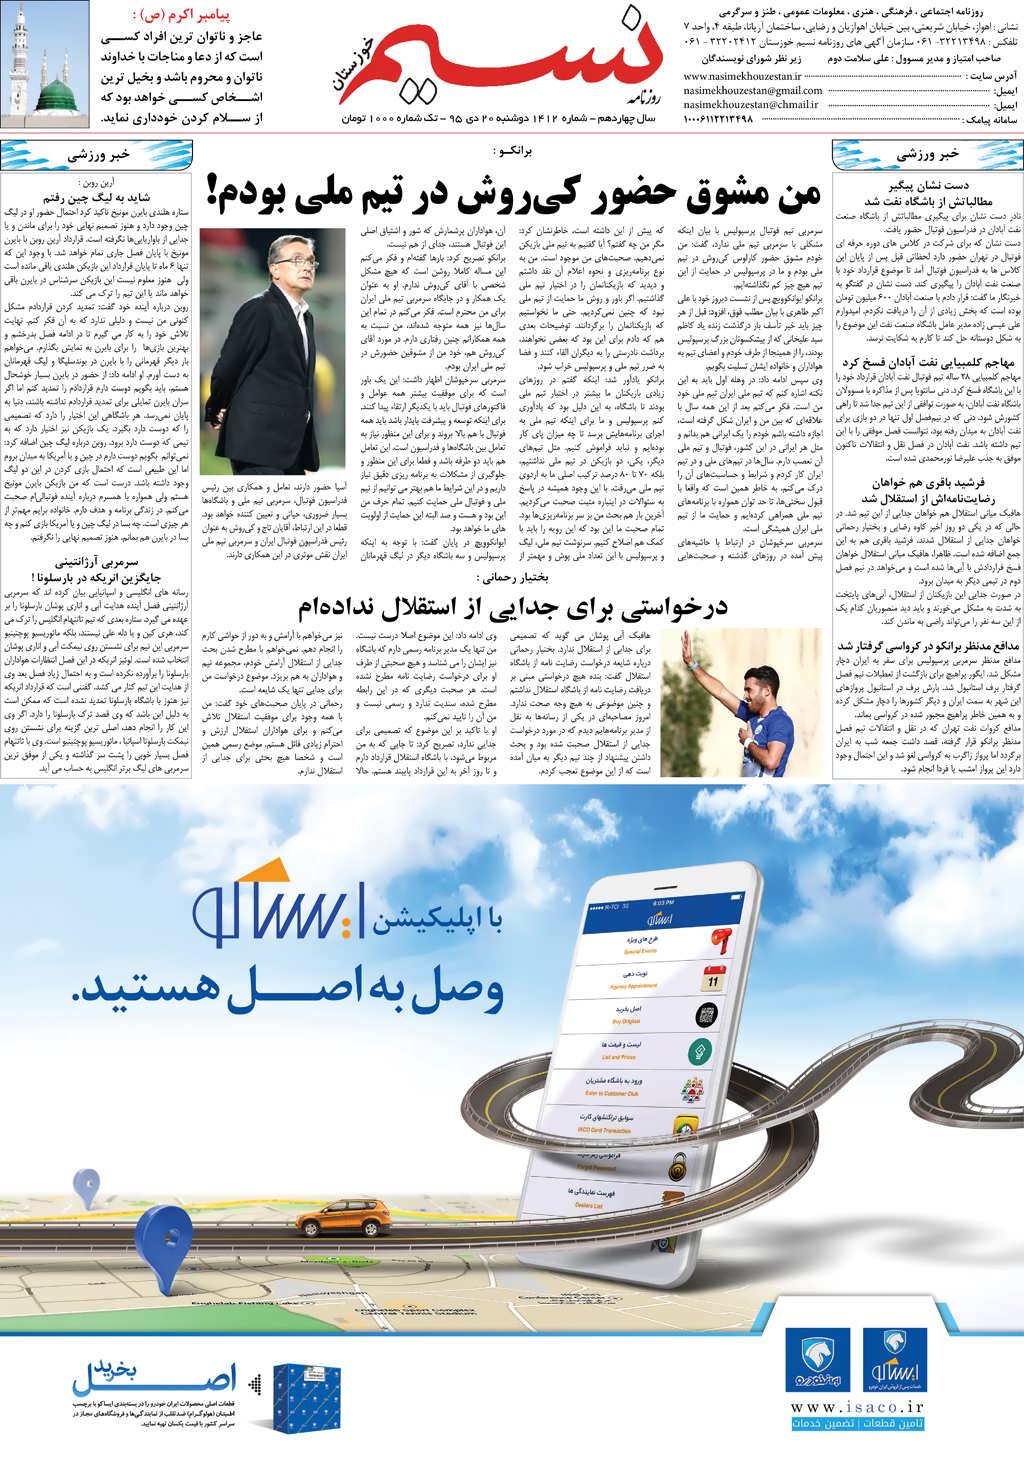 صفحه آخر روزنامه نسیم شماره 1412